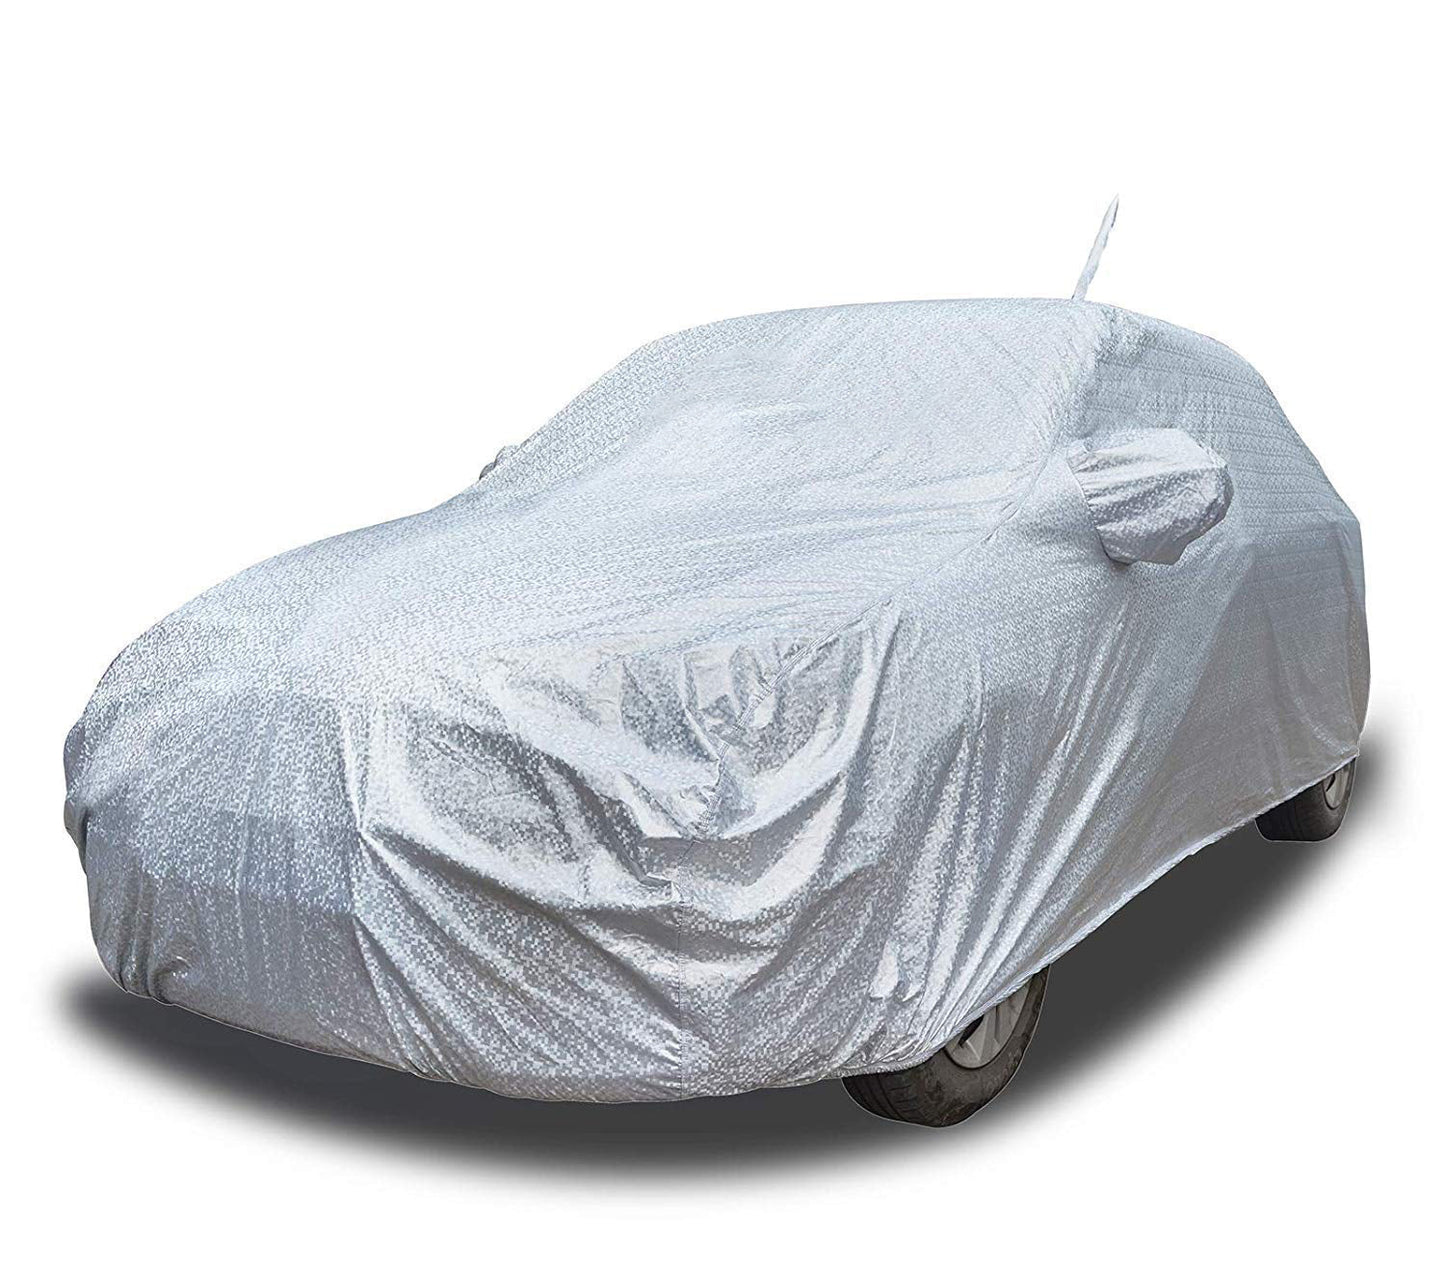 Oxrage Full car Body Cover for Skoda Karoq